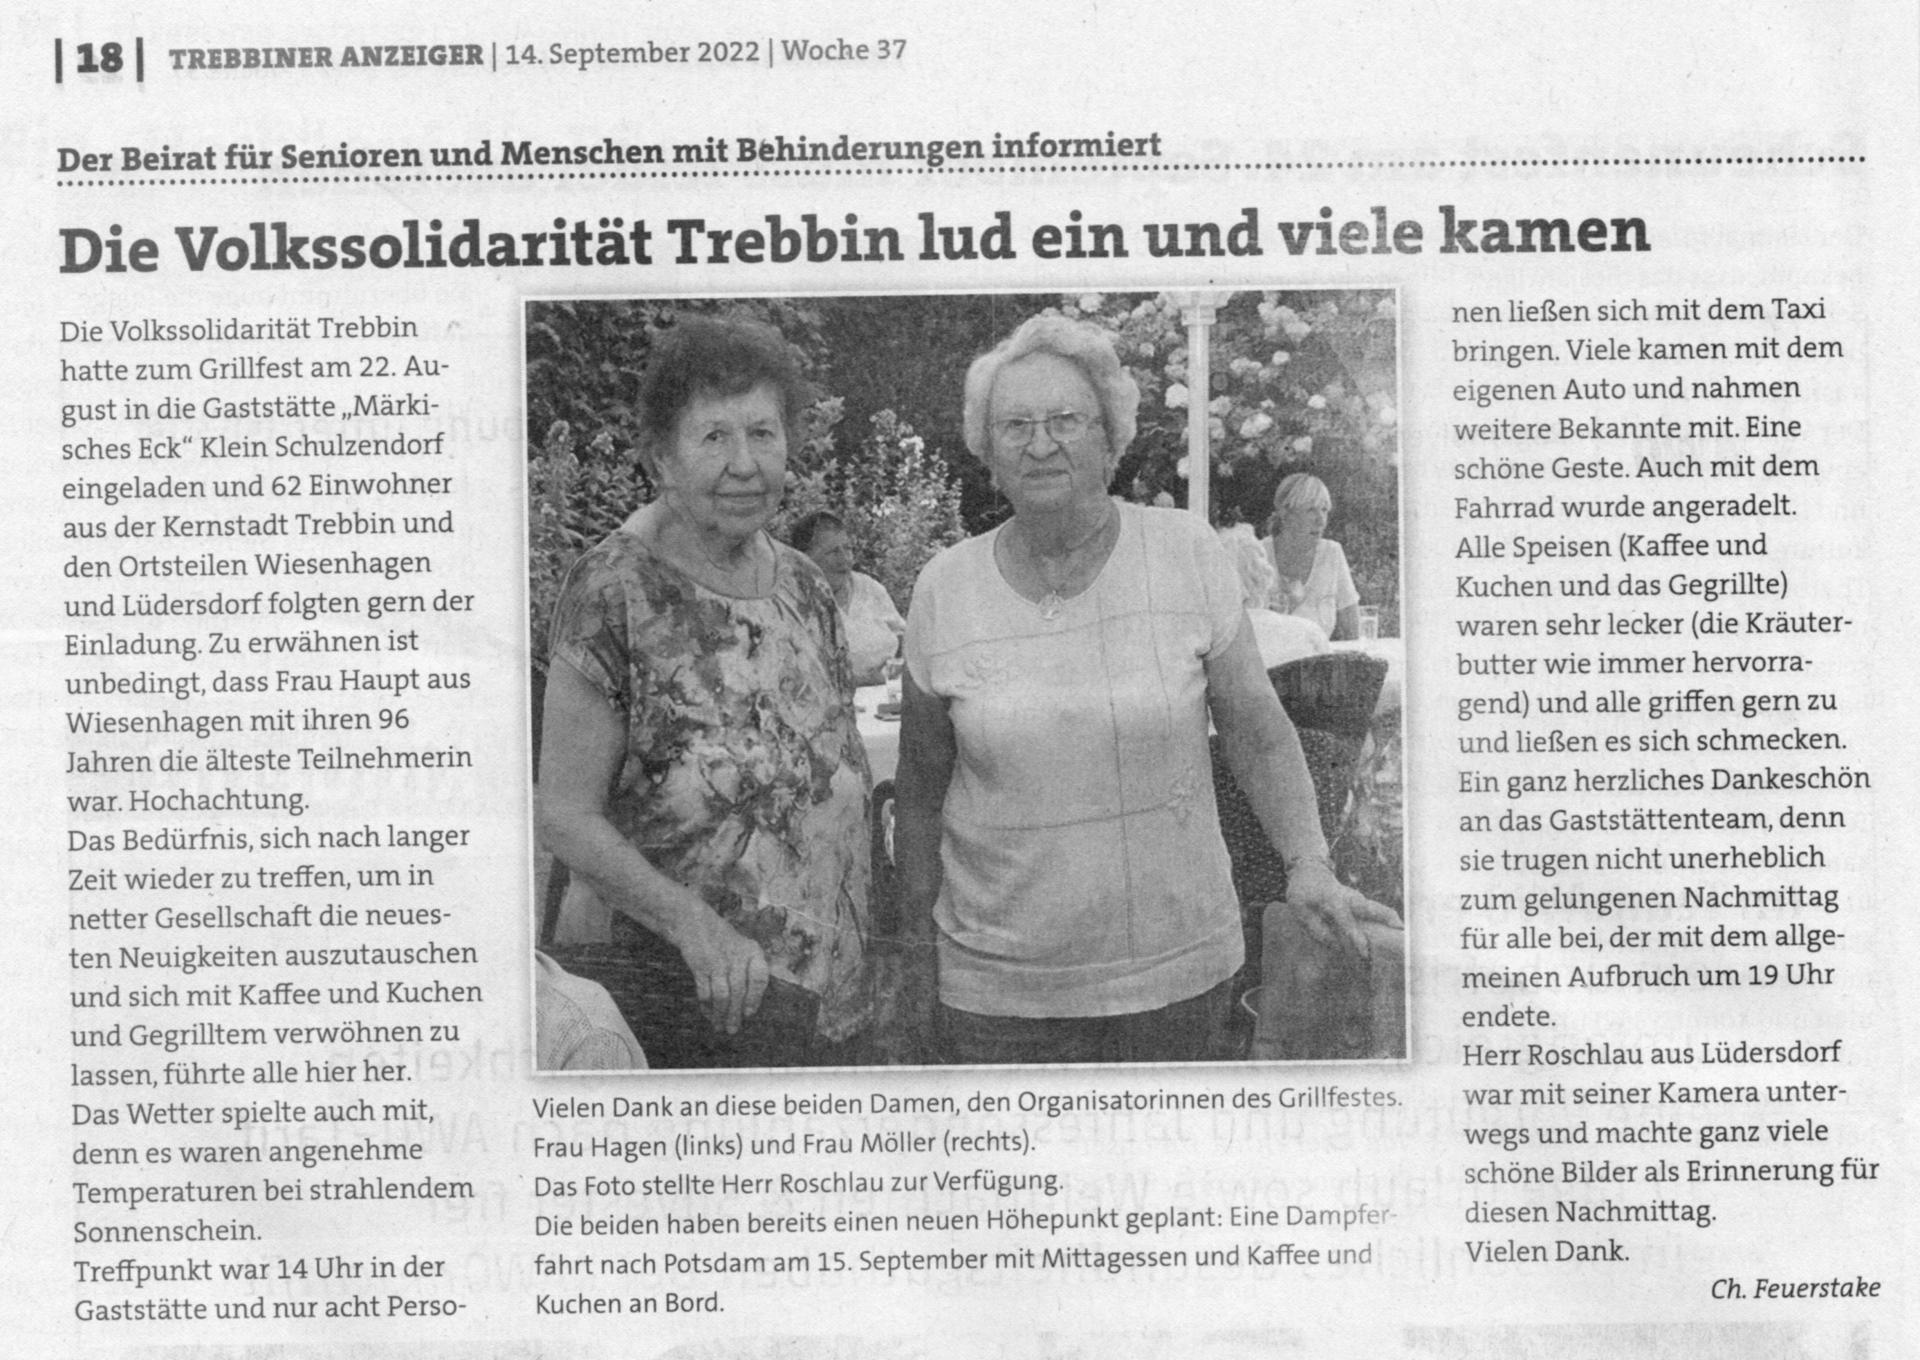 Pressemitteilung Trebbiner Anzeiger vom 14. September 2022, Grillfest in Trebbin